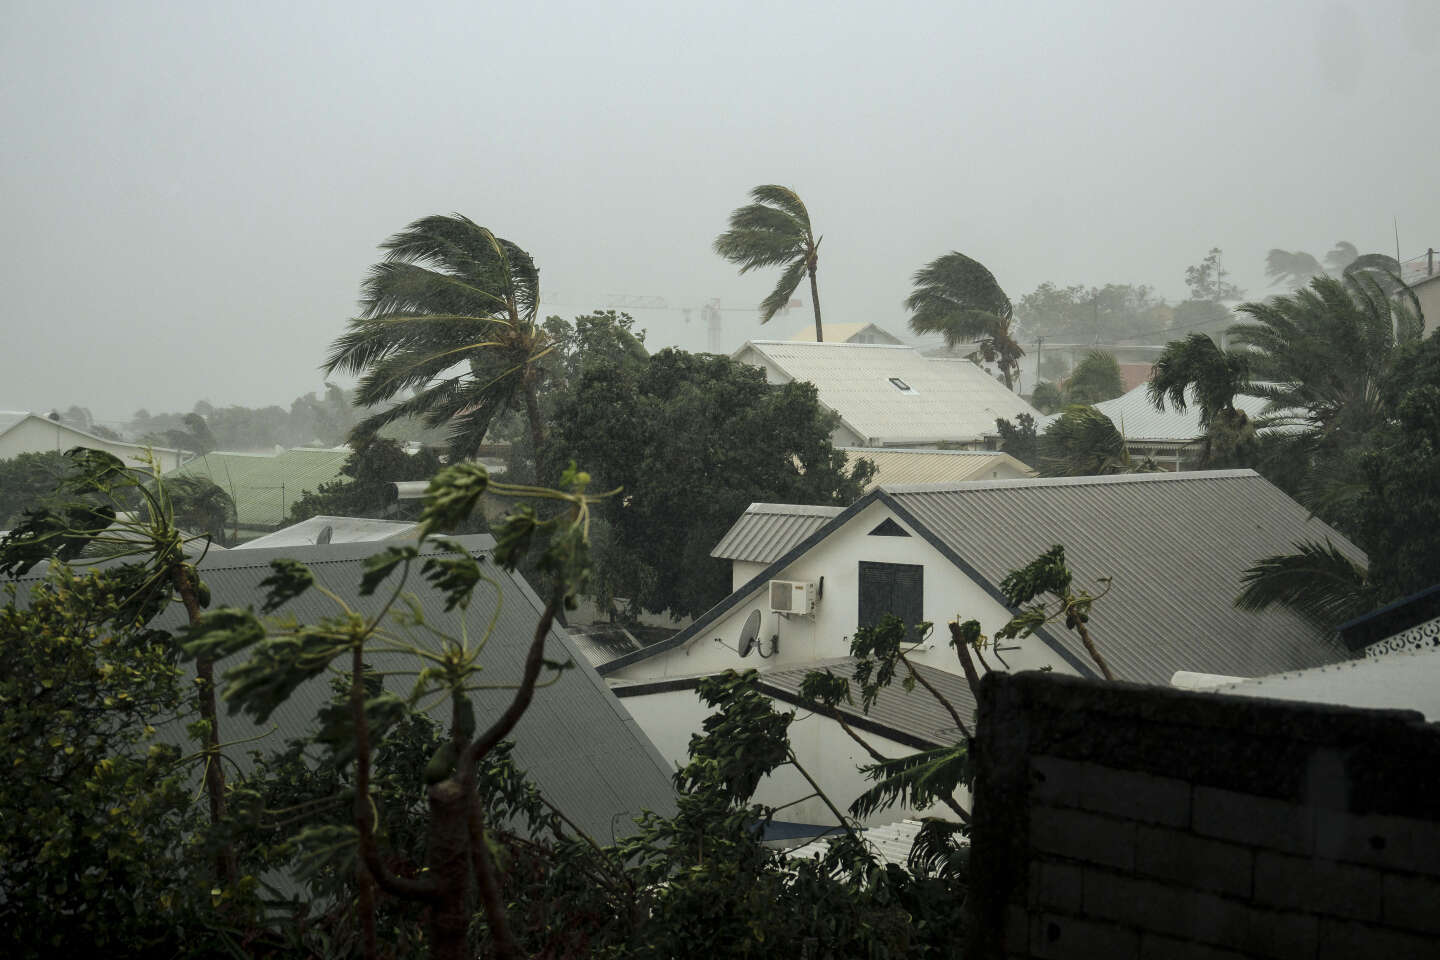 Cyclone Belal à La Réunion : comment l’île anticipe les risques naturels et ce qu’elle pourrait améliorer